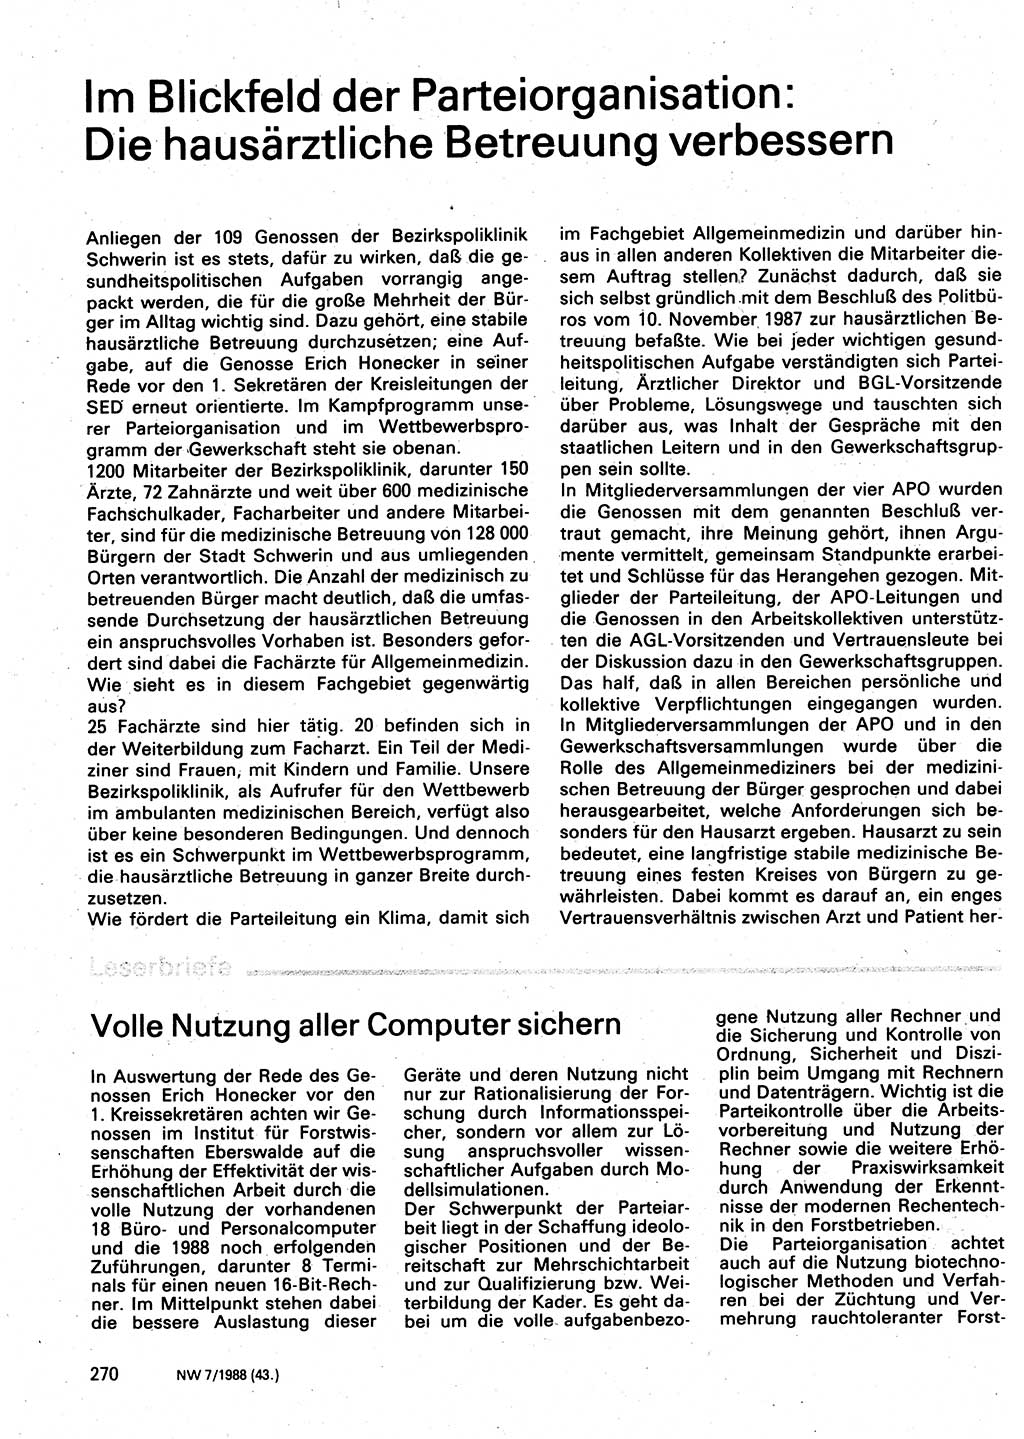 Neuer Weg (NW), Organ des Zentralkomitees (ZK) der SED (Sozialistische Einheitspartei Deutschlands) fÃ¼r Fragen des Parteilebens, 43. Jahrgang [Deutsche Demokratische Republik (DDR)] 1988, Seite 270 (NW ZK SED DDR 1988, S. 270)